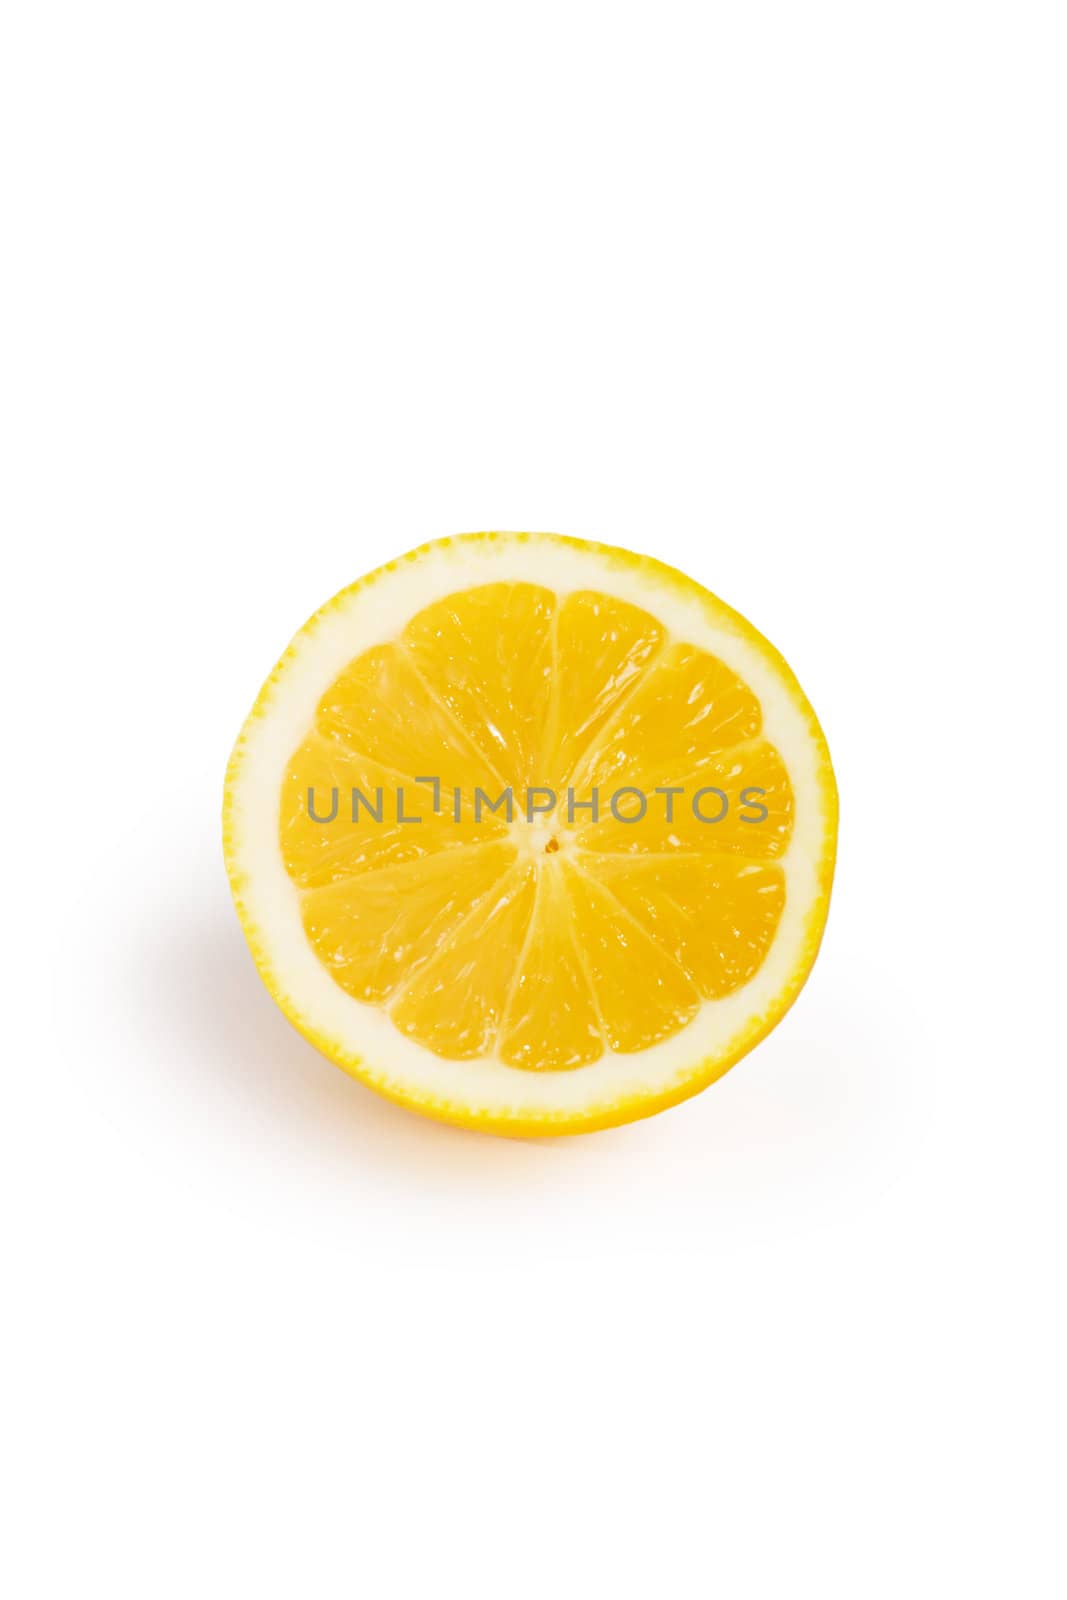 Fresh lemon isolated on a white background